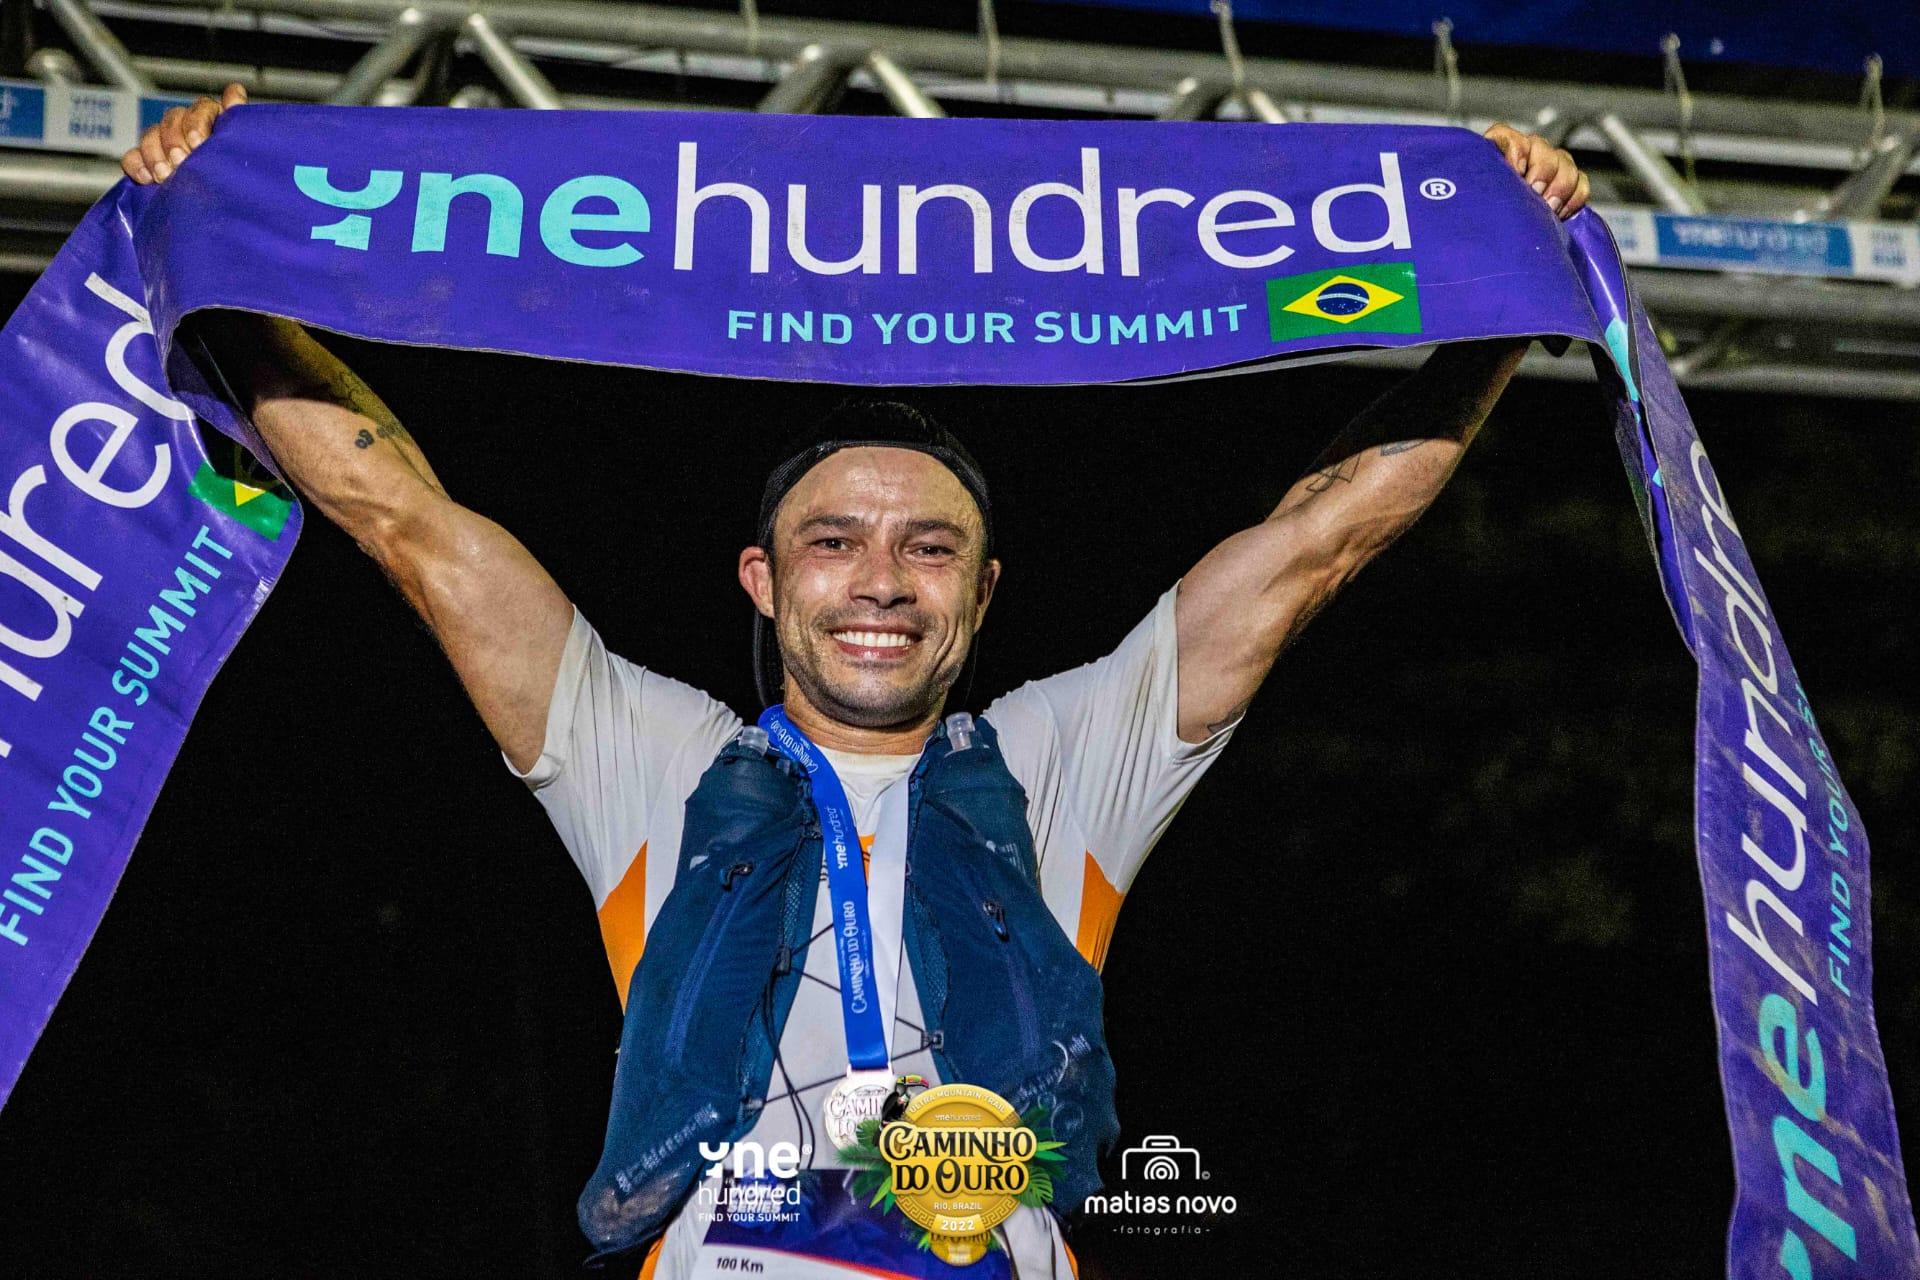 Com 14h49m28s, Jeferson Dias foi campeão dos 100 km da One Hundred® Rio Caminho do Ouro. (Foto de Matias Novo/Divulgação)